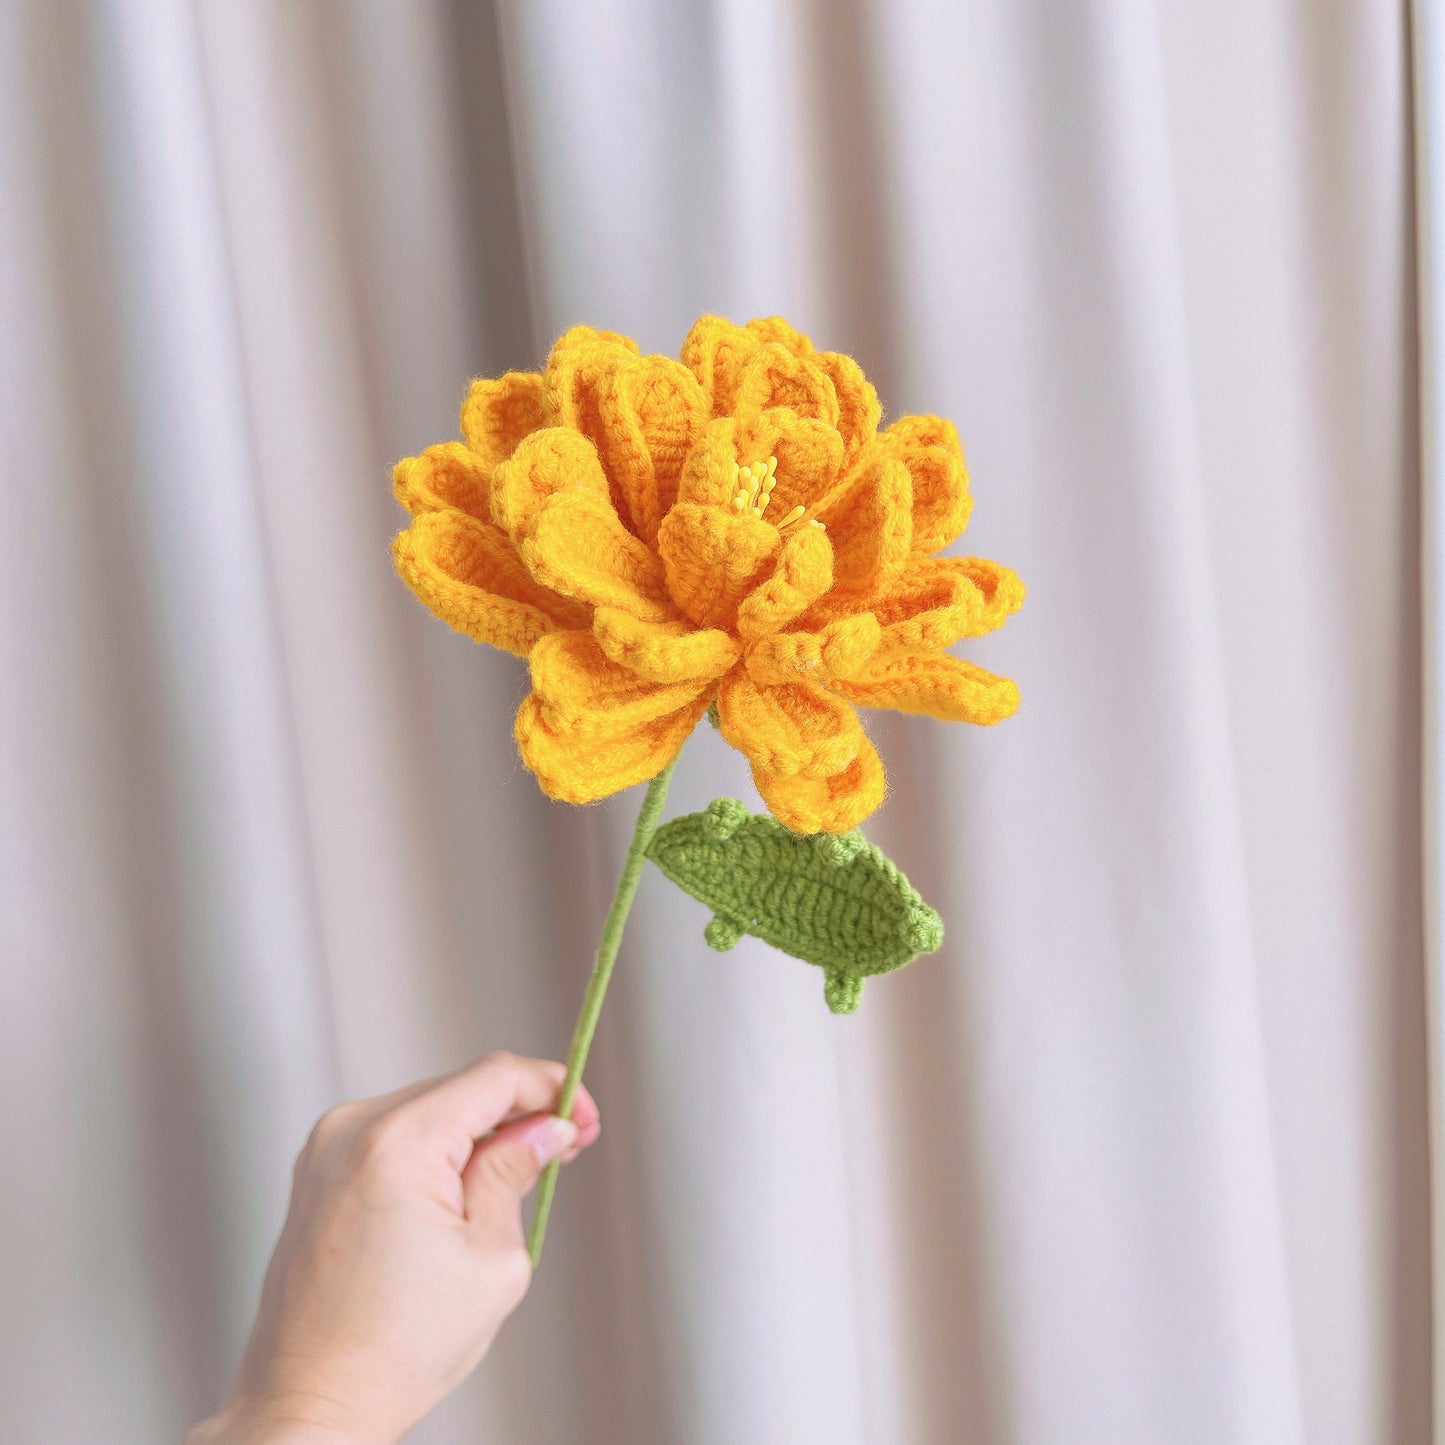 Ringelblumenstrauß zum Geburtsmonat Oktober – handgehäkeltes Blumenarrangement zum Geburtstag mit einem Stiel und festlicher Verpackung